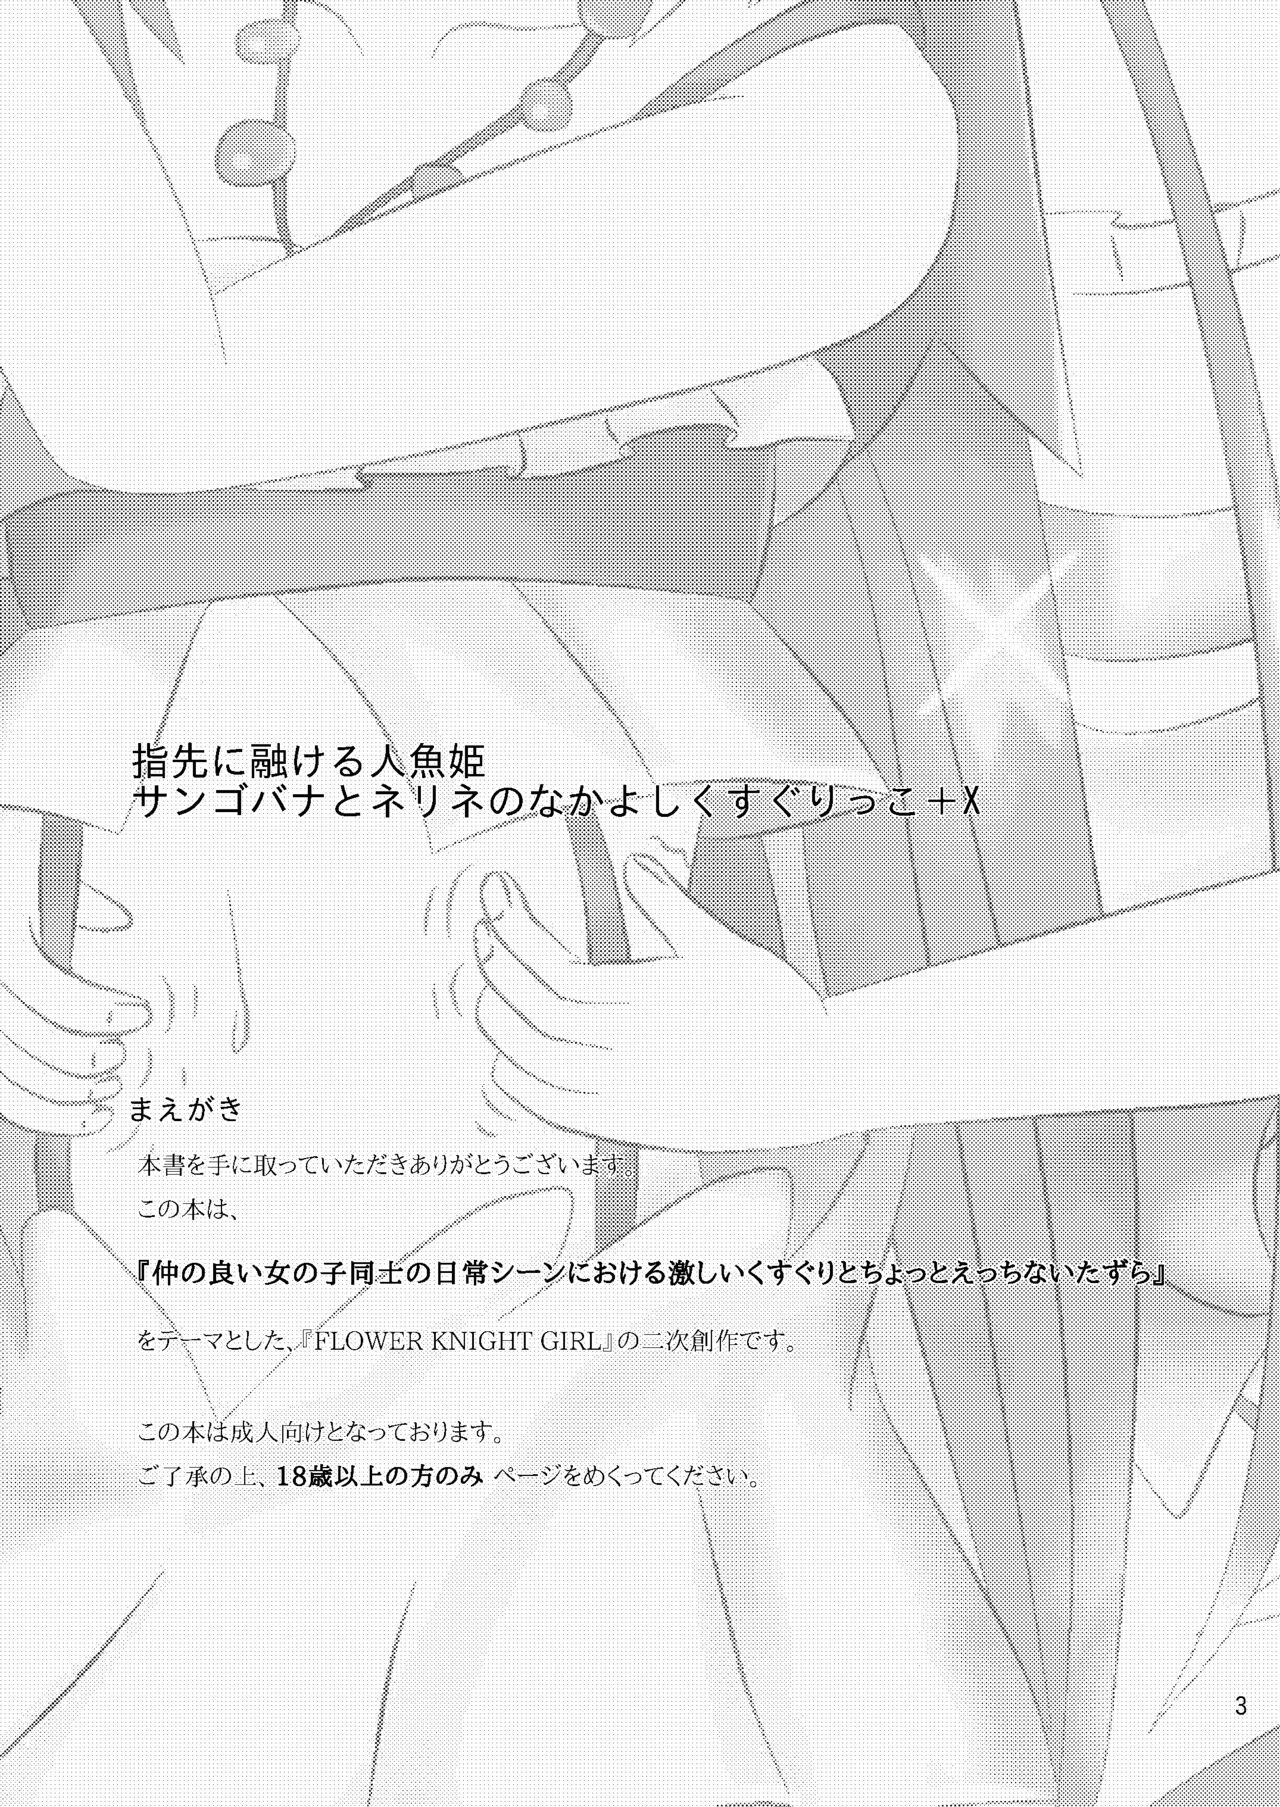 Blackdick Yubisaki ni Tokeru Ningyohime - Sangobana to Nerine no Nakayoshi Kusugurikko + X - Flower knight girl Jerk Off - Page 3